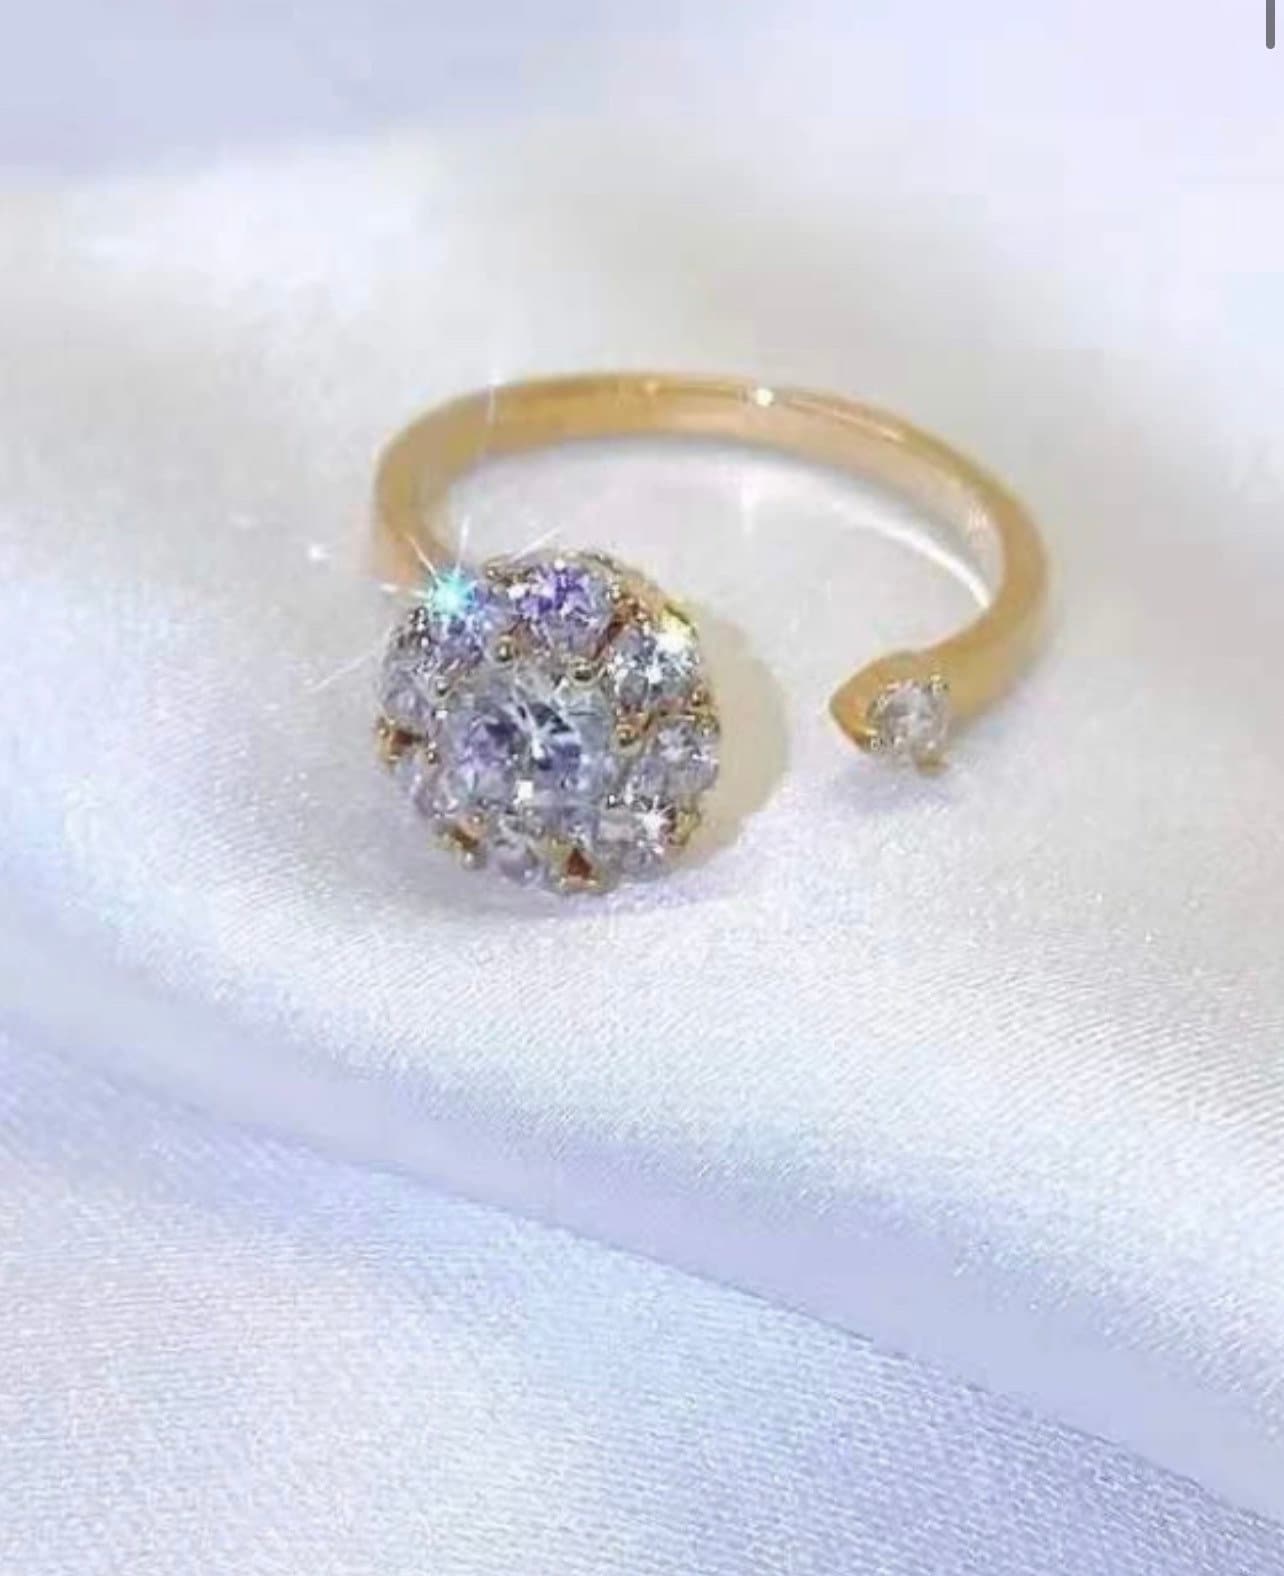 Spinner Ring | Designer | Beautiful Ring from Dubai Souk | Christmas Gift